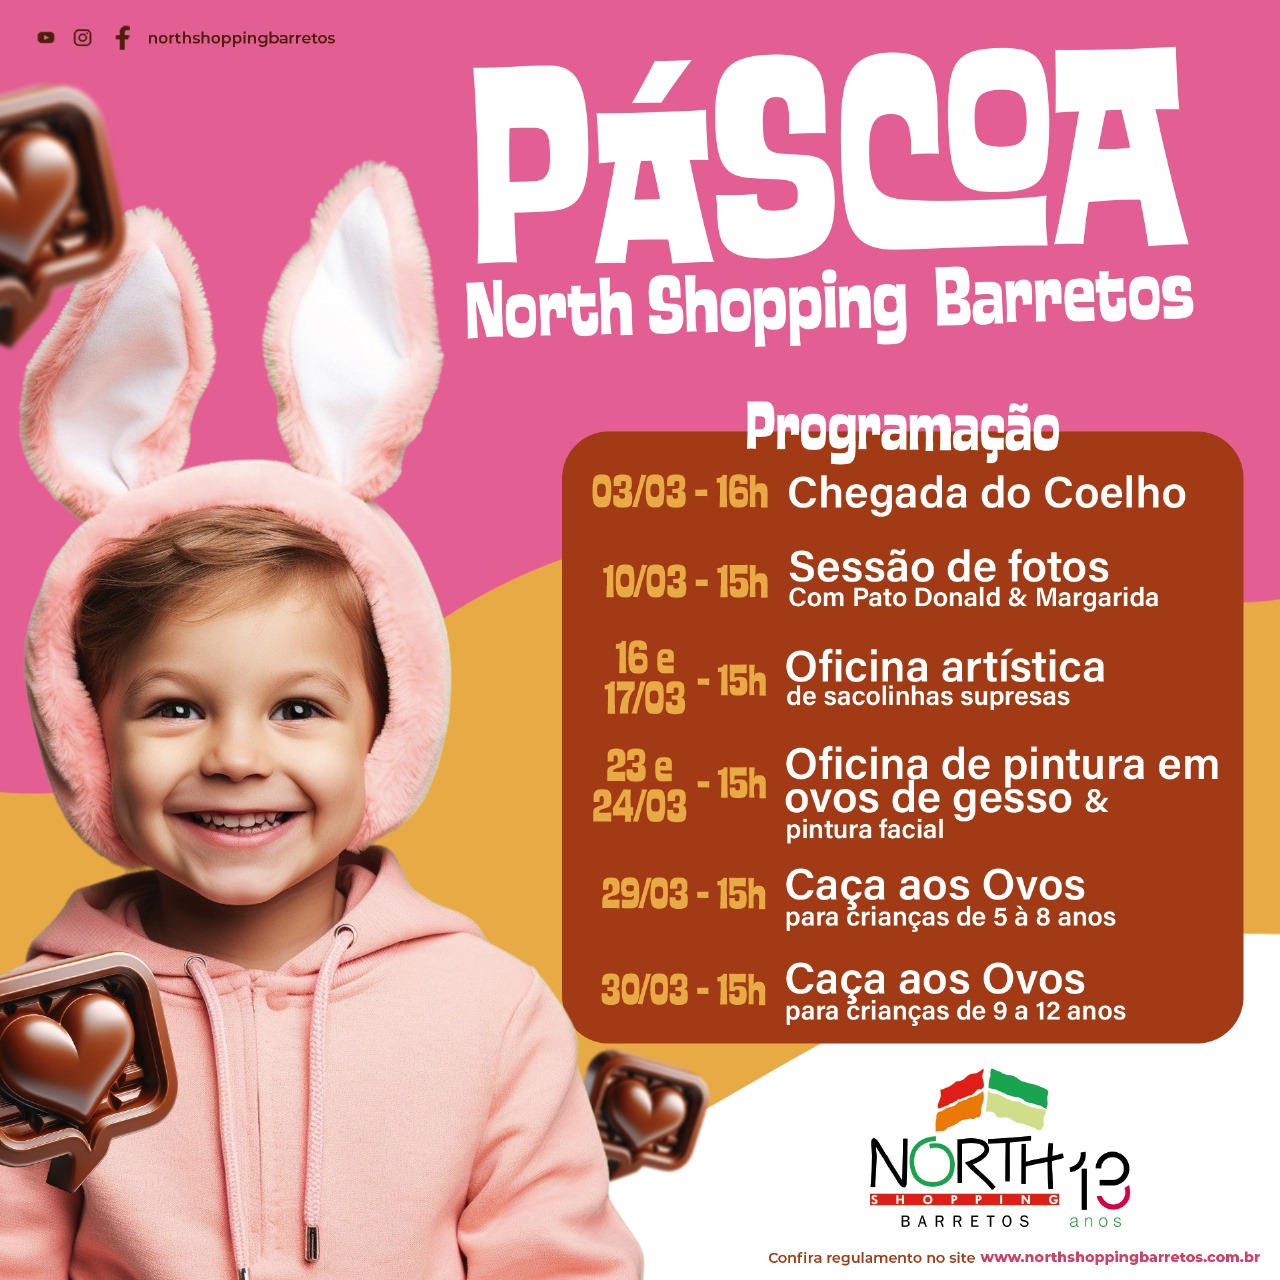 Chegada do Coelho abre o período de Páscoa no North Shopping Barretos